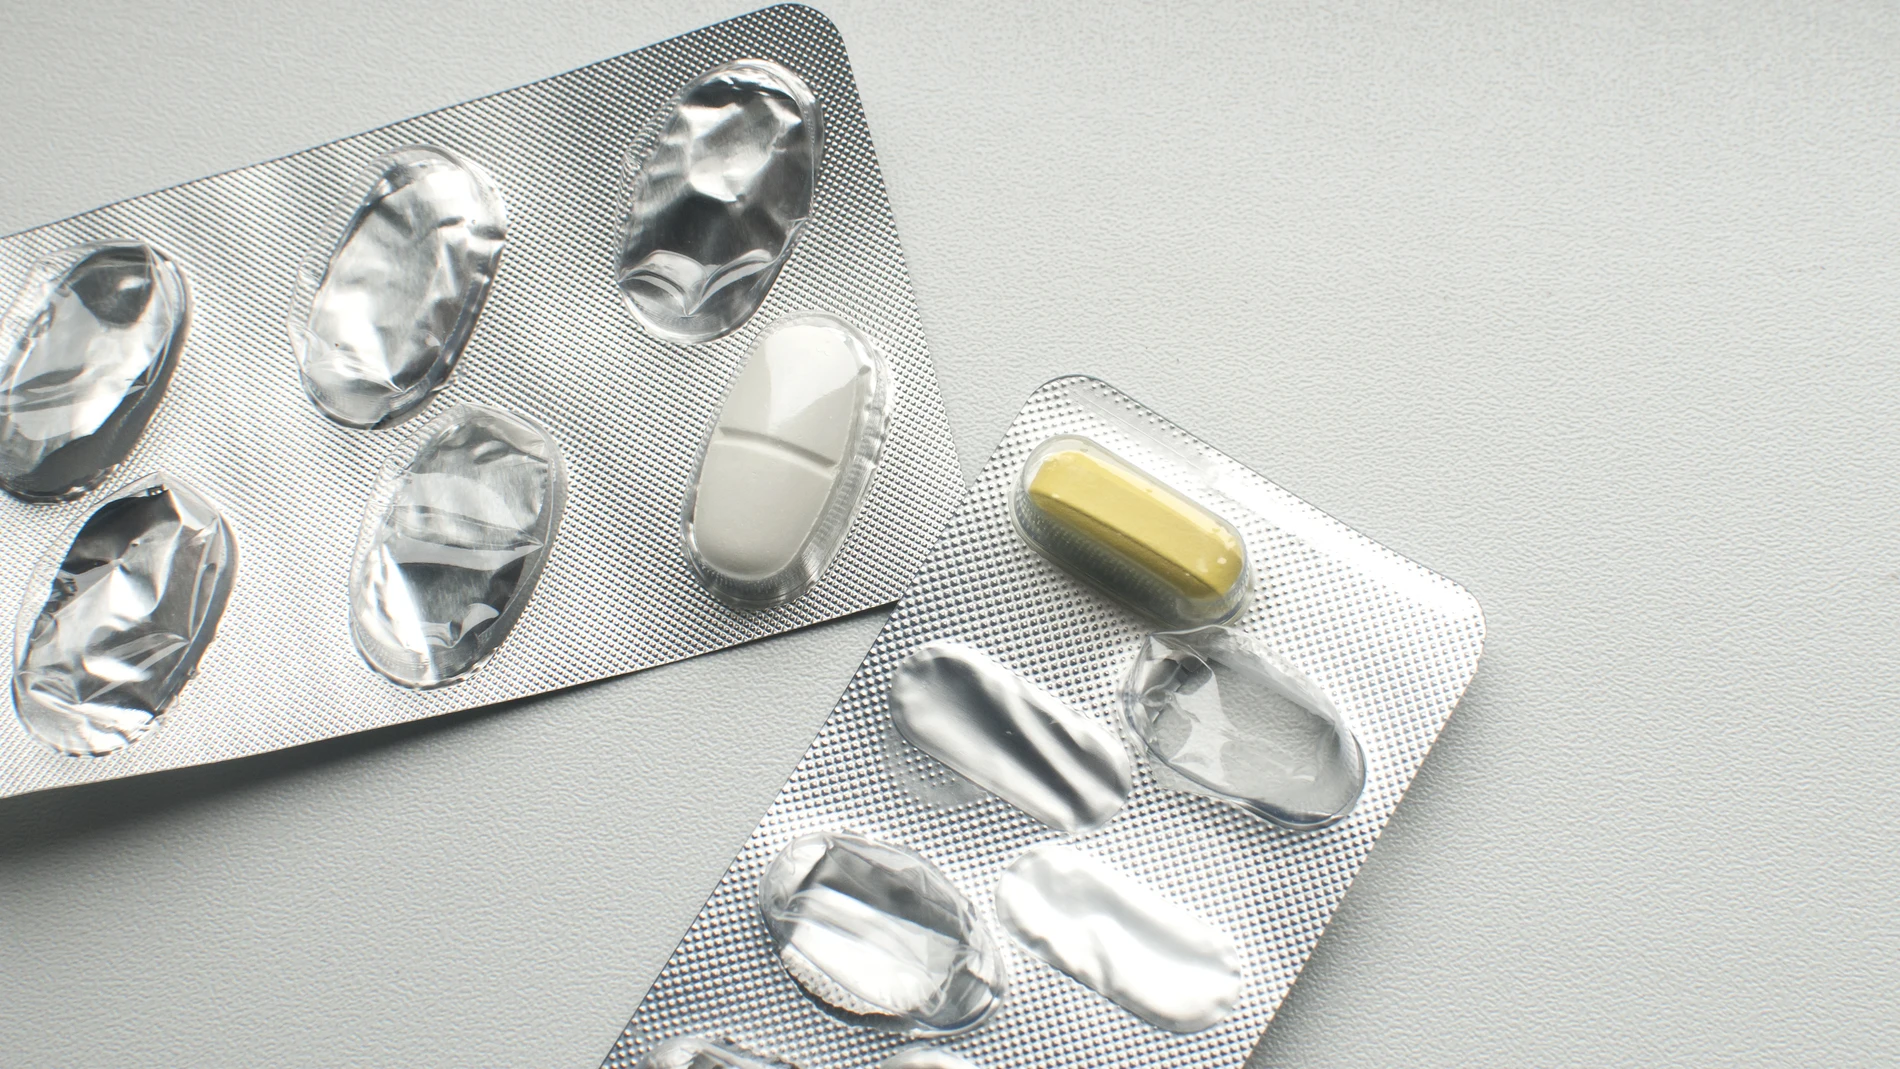 El sexo de los pacientes podría ser algún día una consideración importante a la hora de prescribir antibióticos, según esta investigación